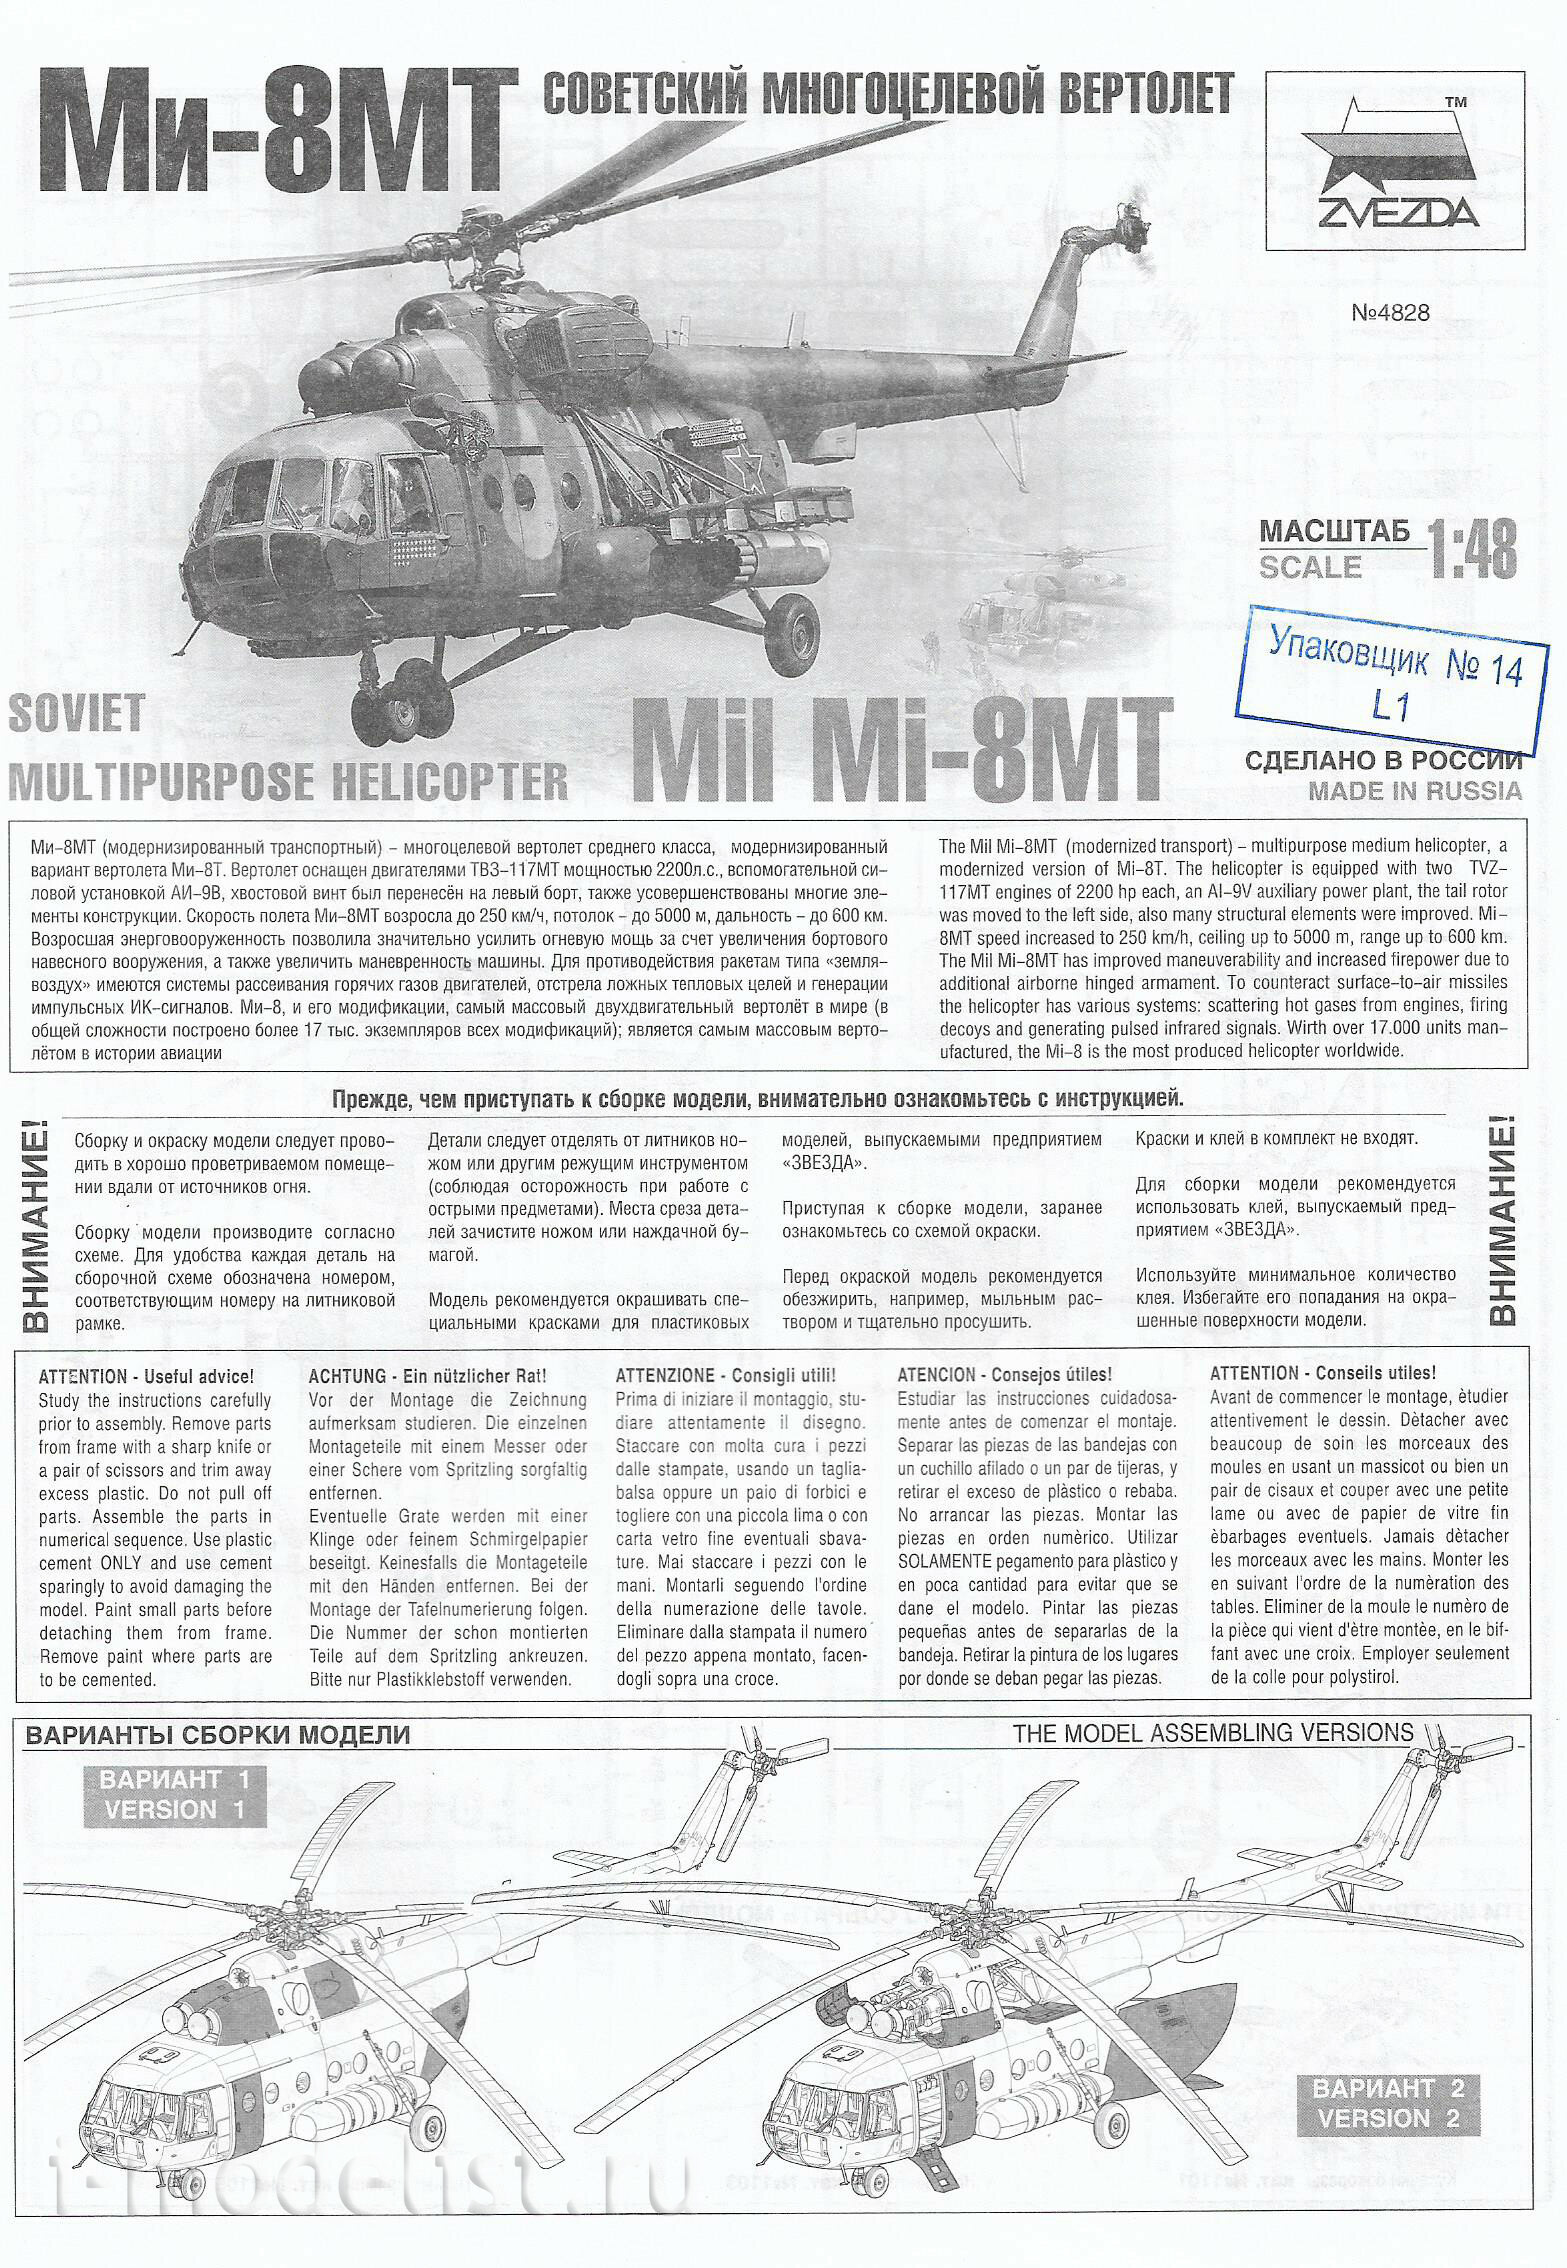 4828 Zvezda 1/48 Soviet multi-purpose helicopter Mi-8MT